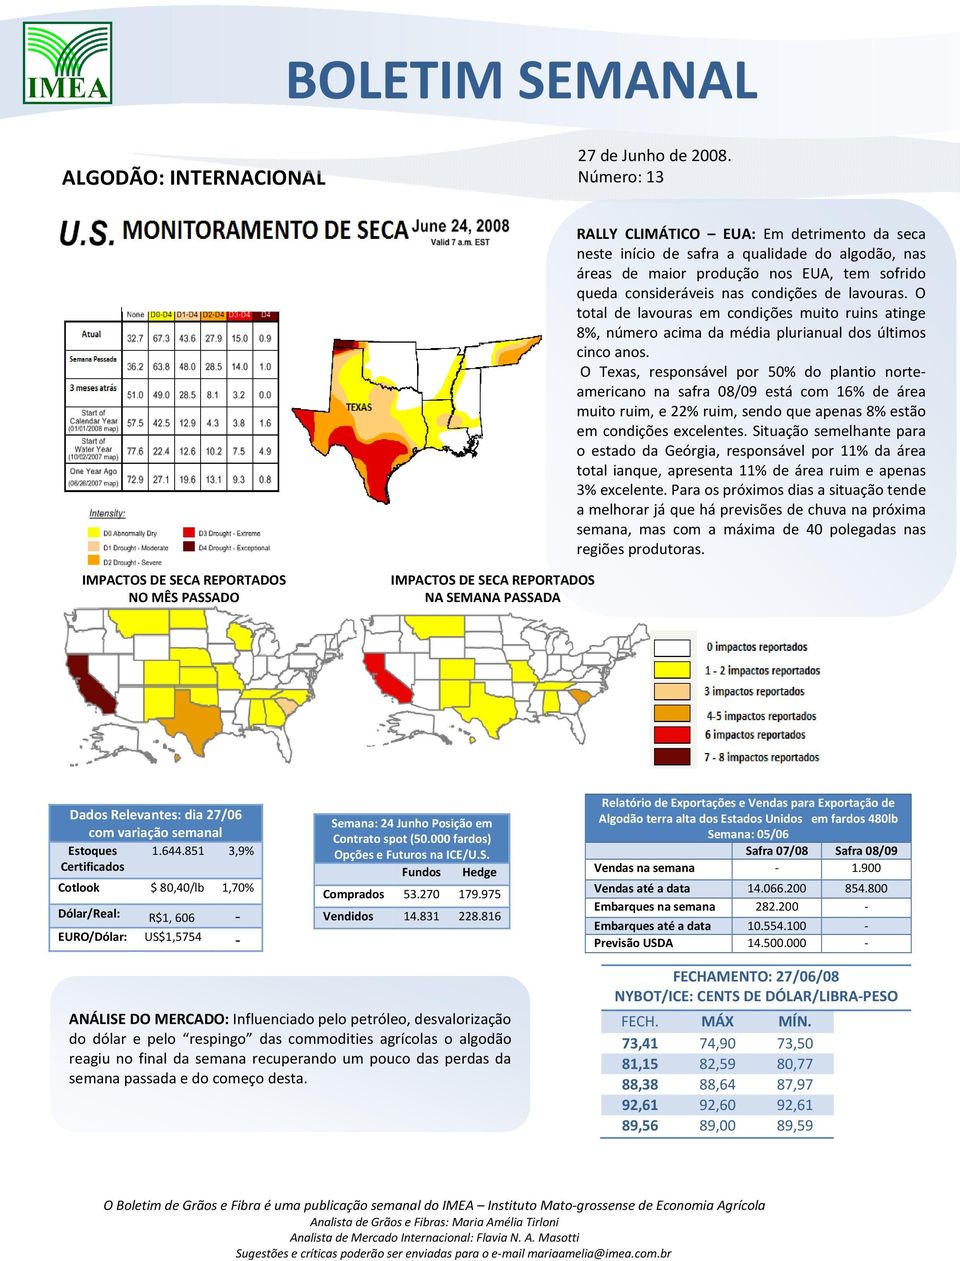 O Texas, responsável por 50% do plantio norteamericano na safra 08/09 está com 16% de área muito ruim, e 22% ruim, sendo que apenas 8% estão em condições excelentes.